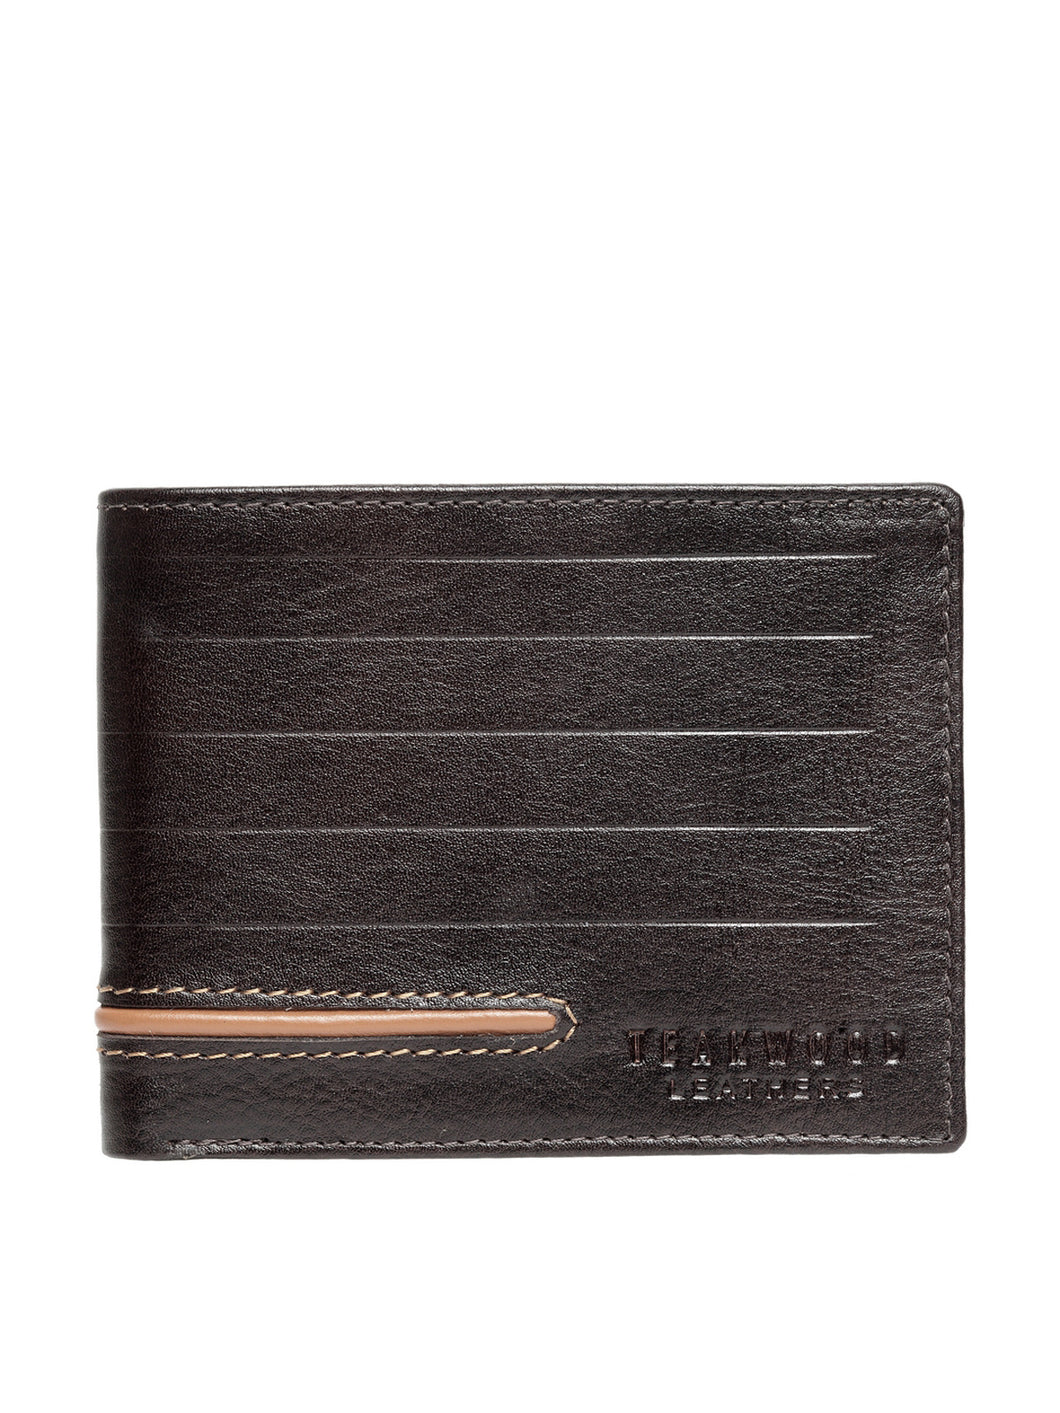 Teakwood Genuine Leather Wallets - Brown